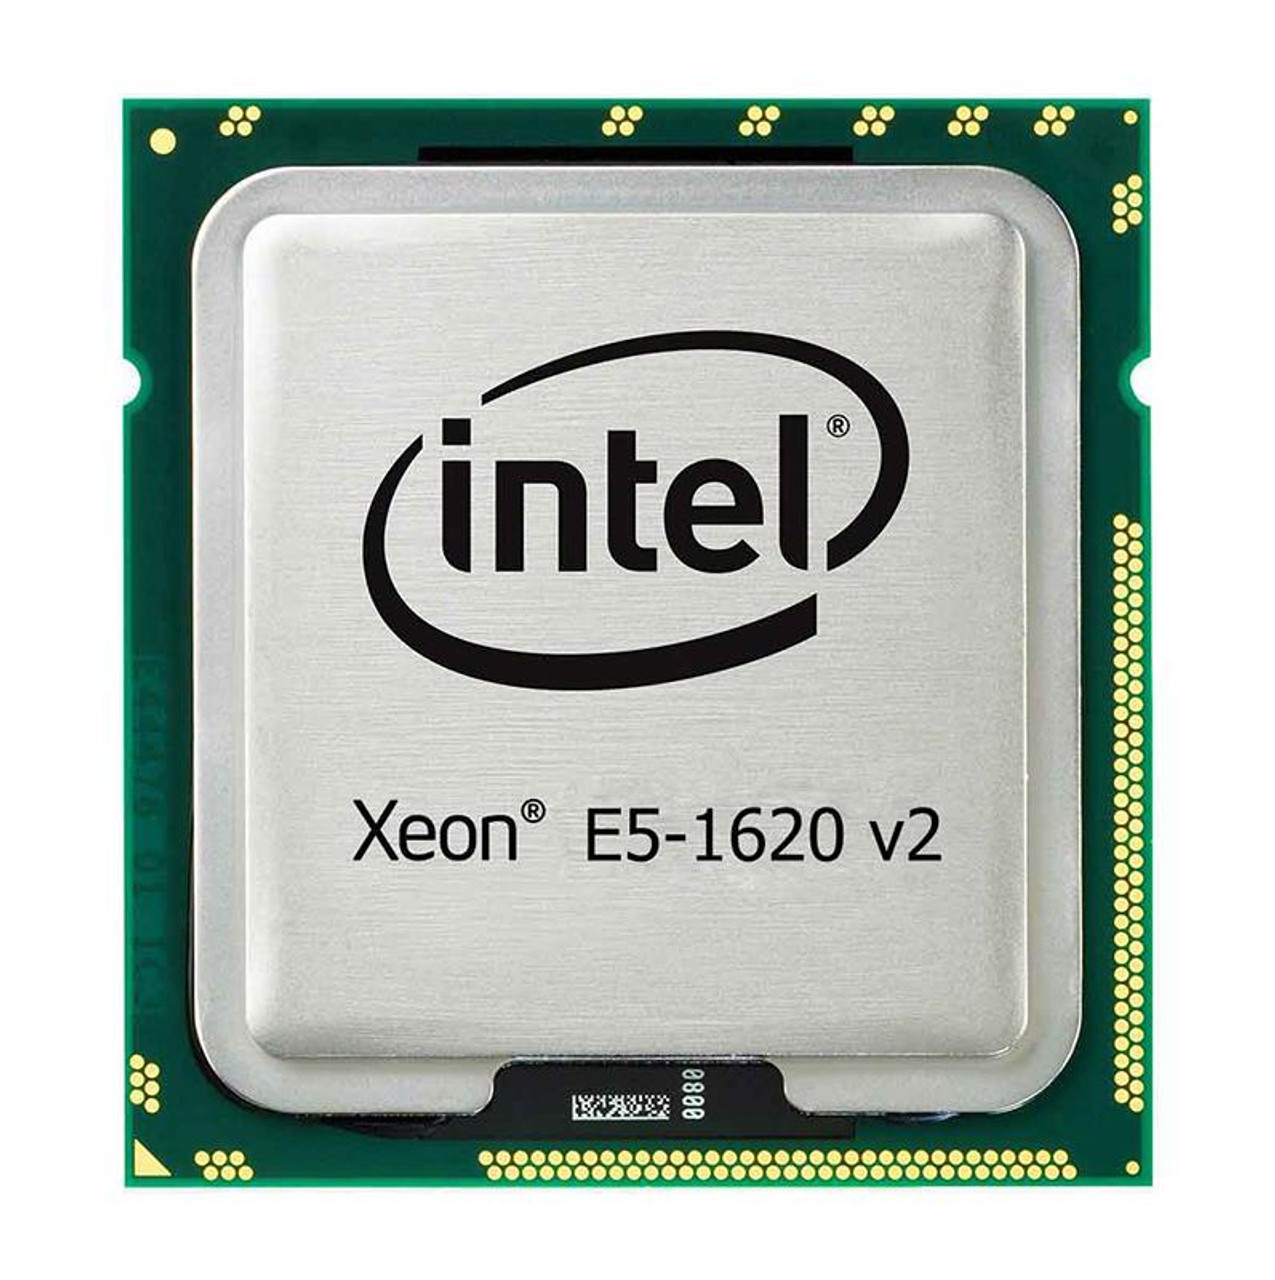 SRIAR Intel Xeon E5-1620 v2 Quad-Core 3.60GHz 0.00GT/s QPI 10MB L3 Cache Processor